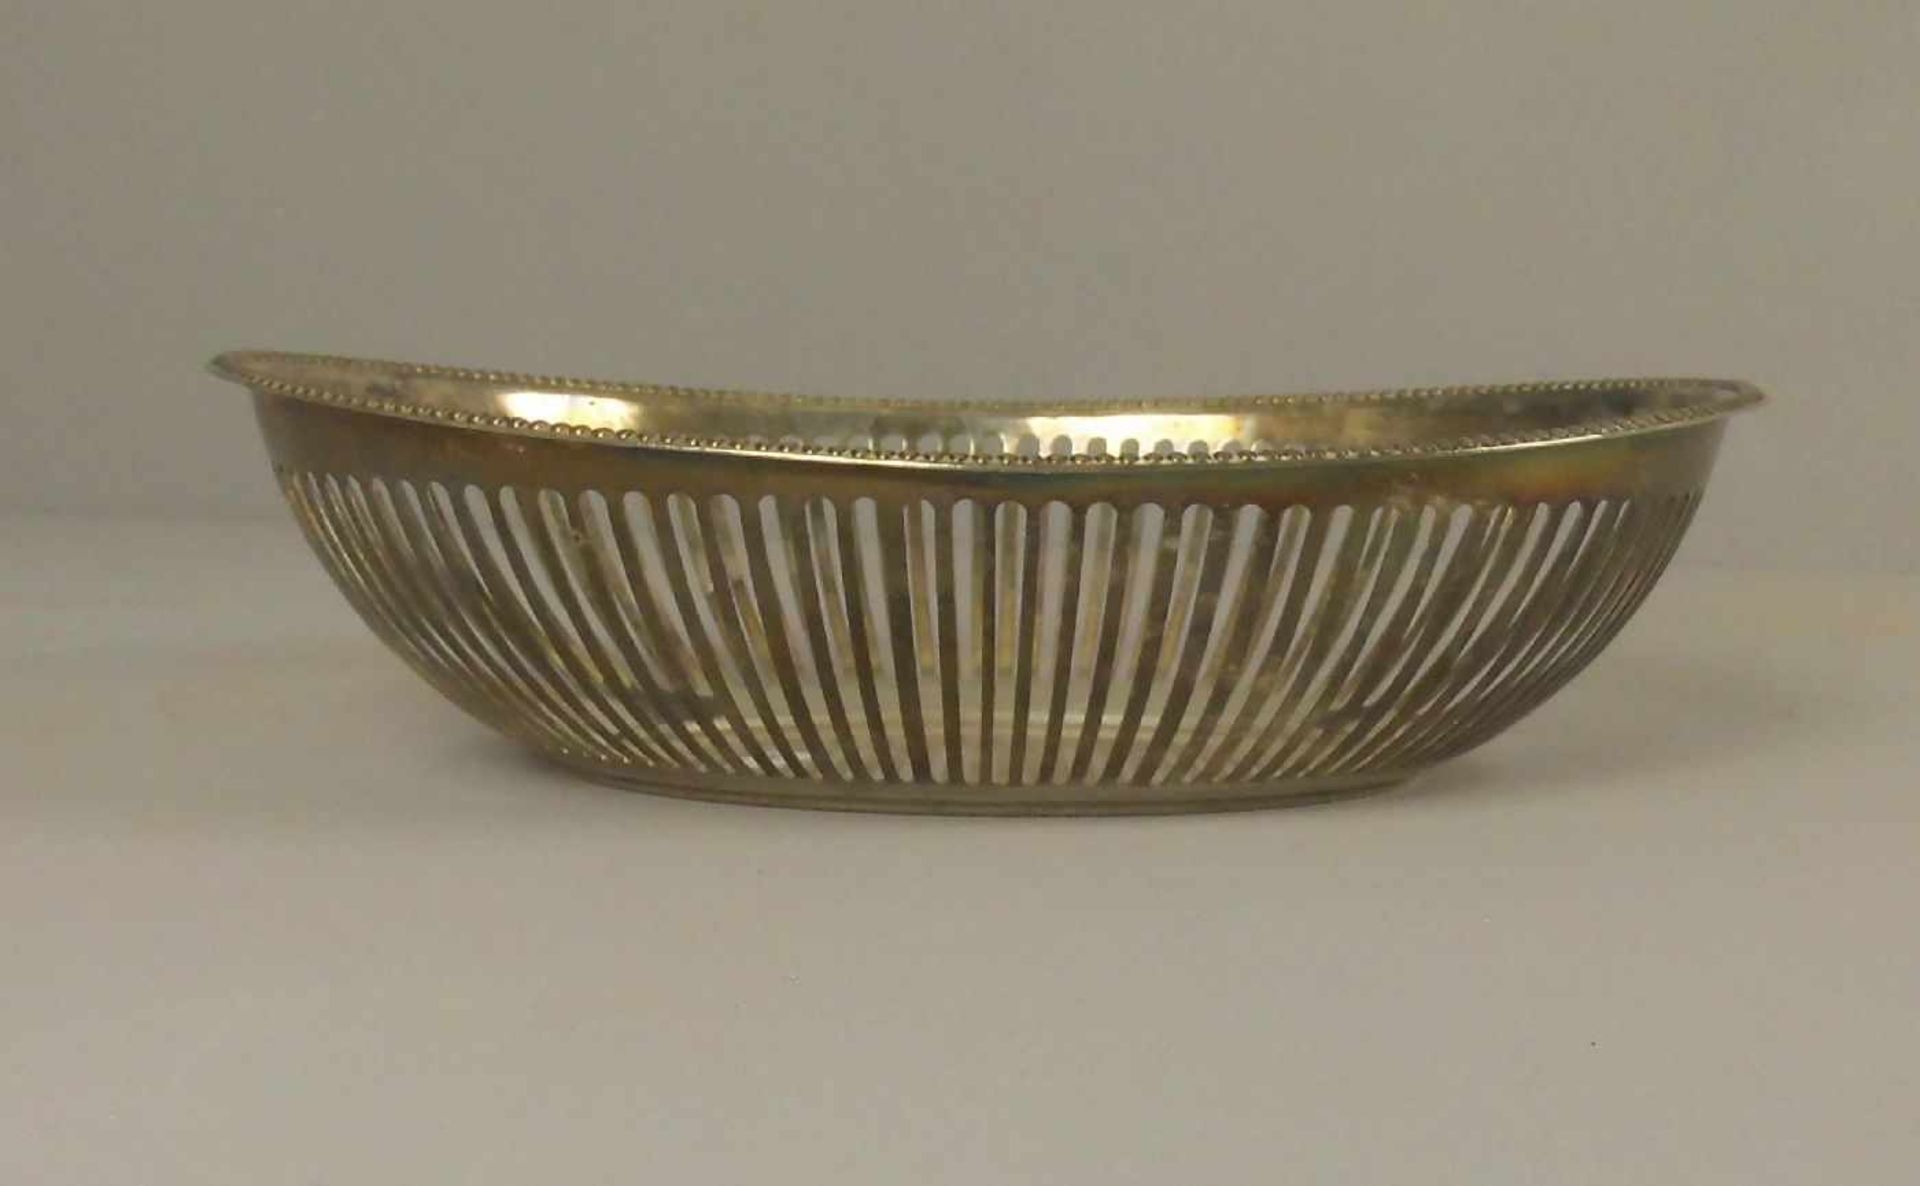 KORBSCHALE / BROTKORB / bowl, versilbertes Metall / plated. Ovale Schale mit durchbrochener - Image 2 of 3